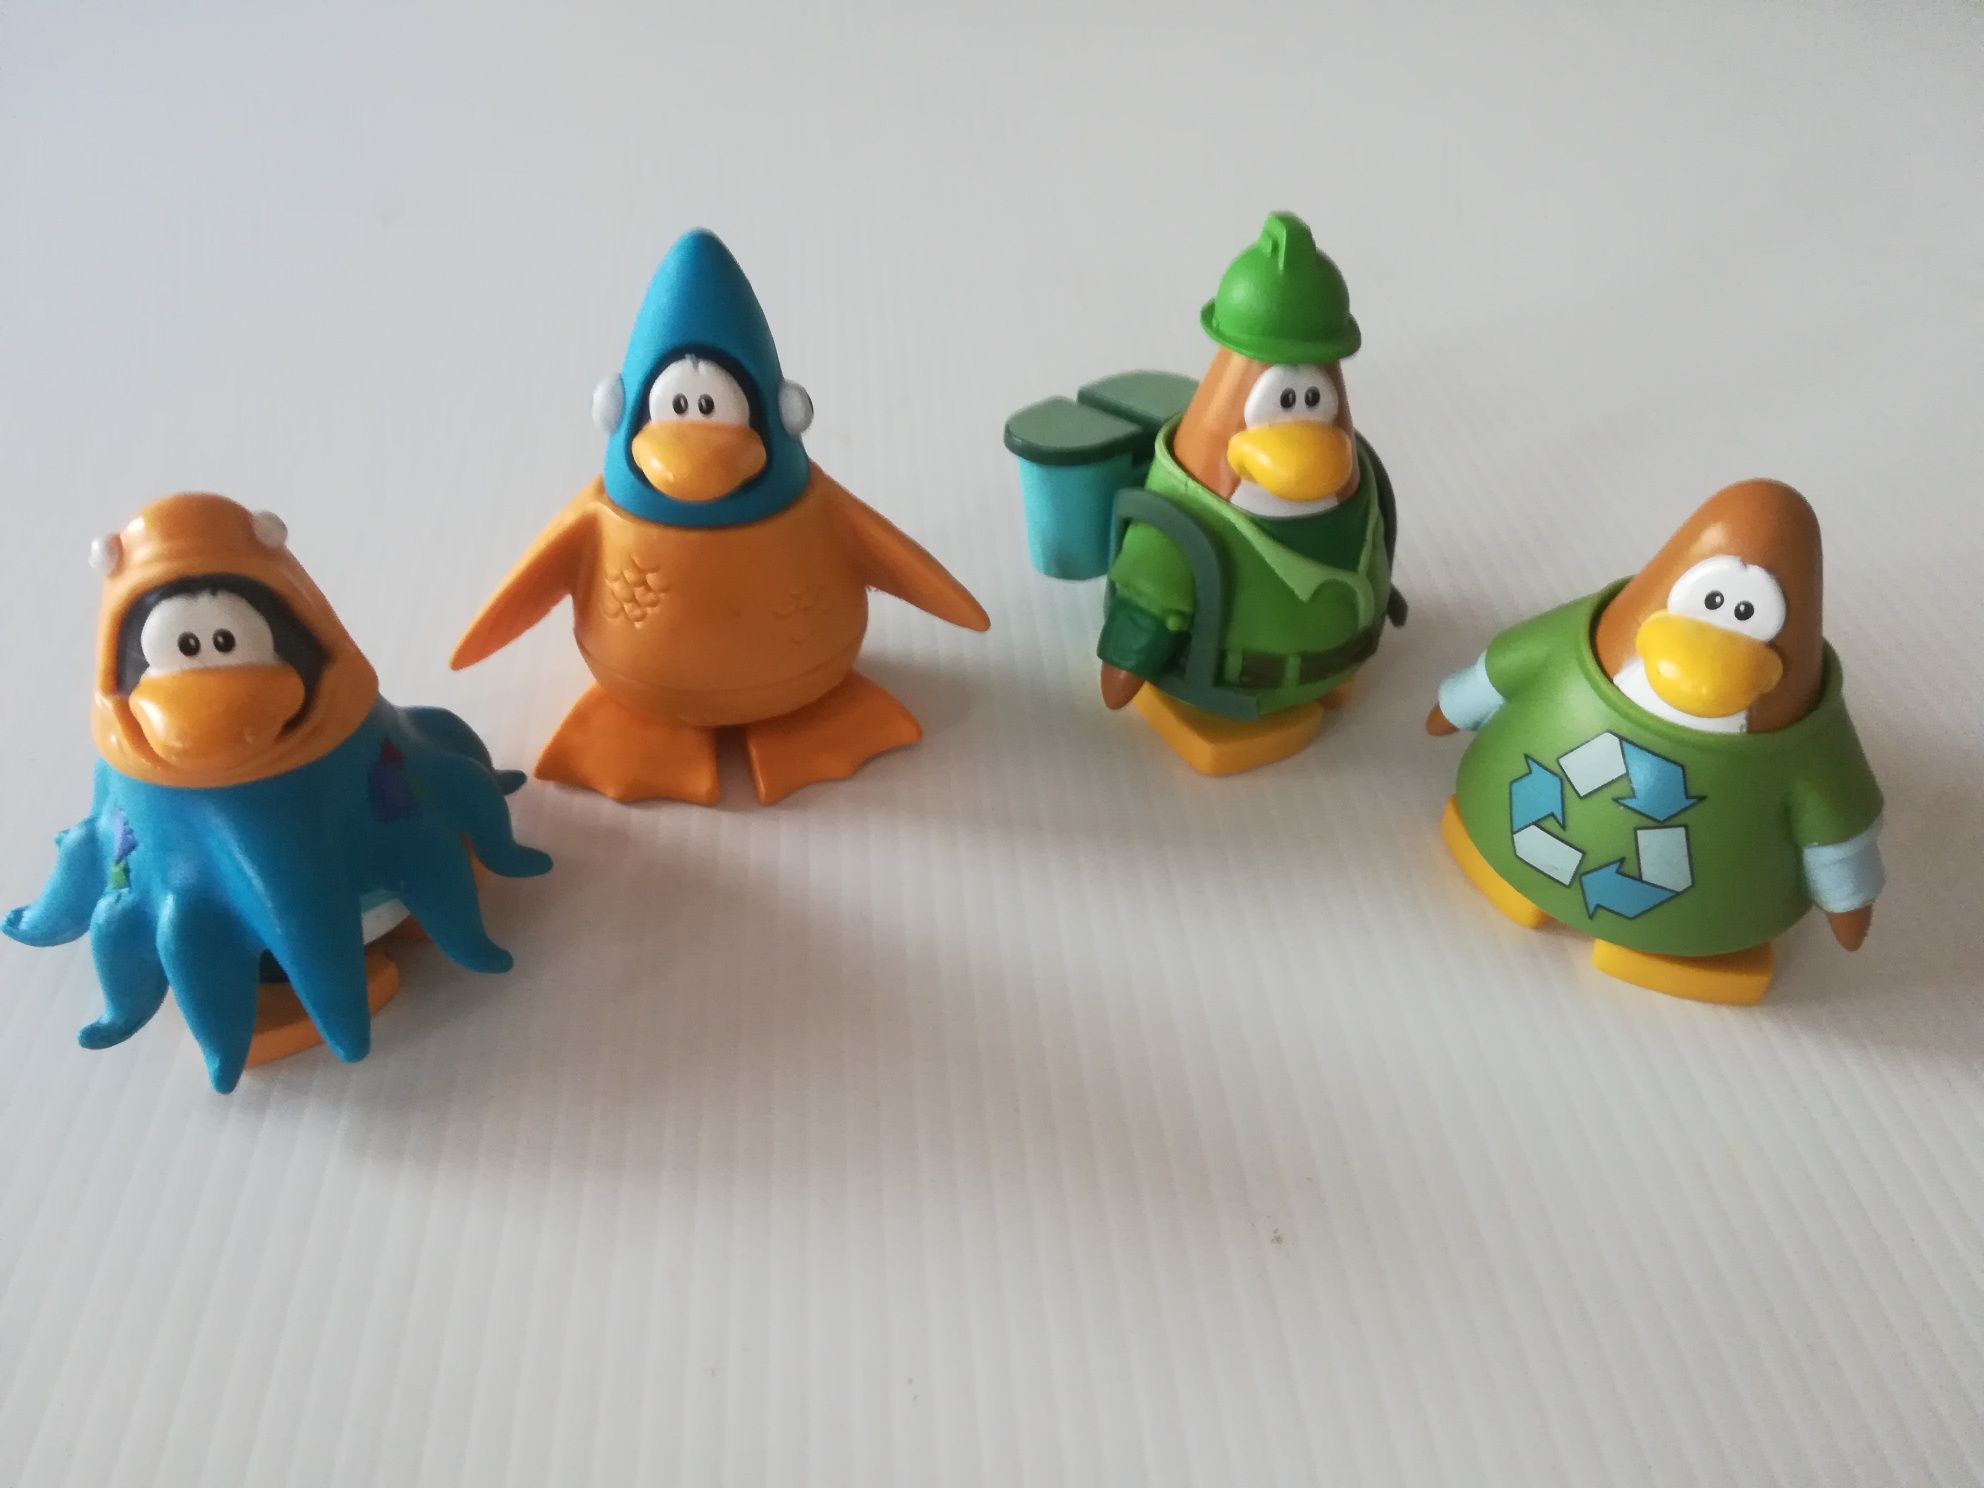 Brinquedo Club Penguin  bonecos (Clube pinguim)